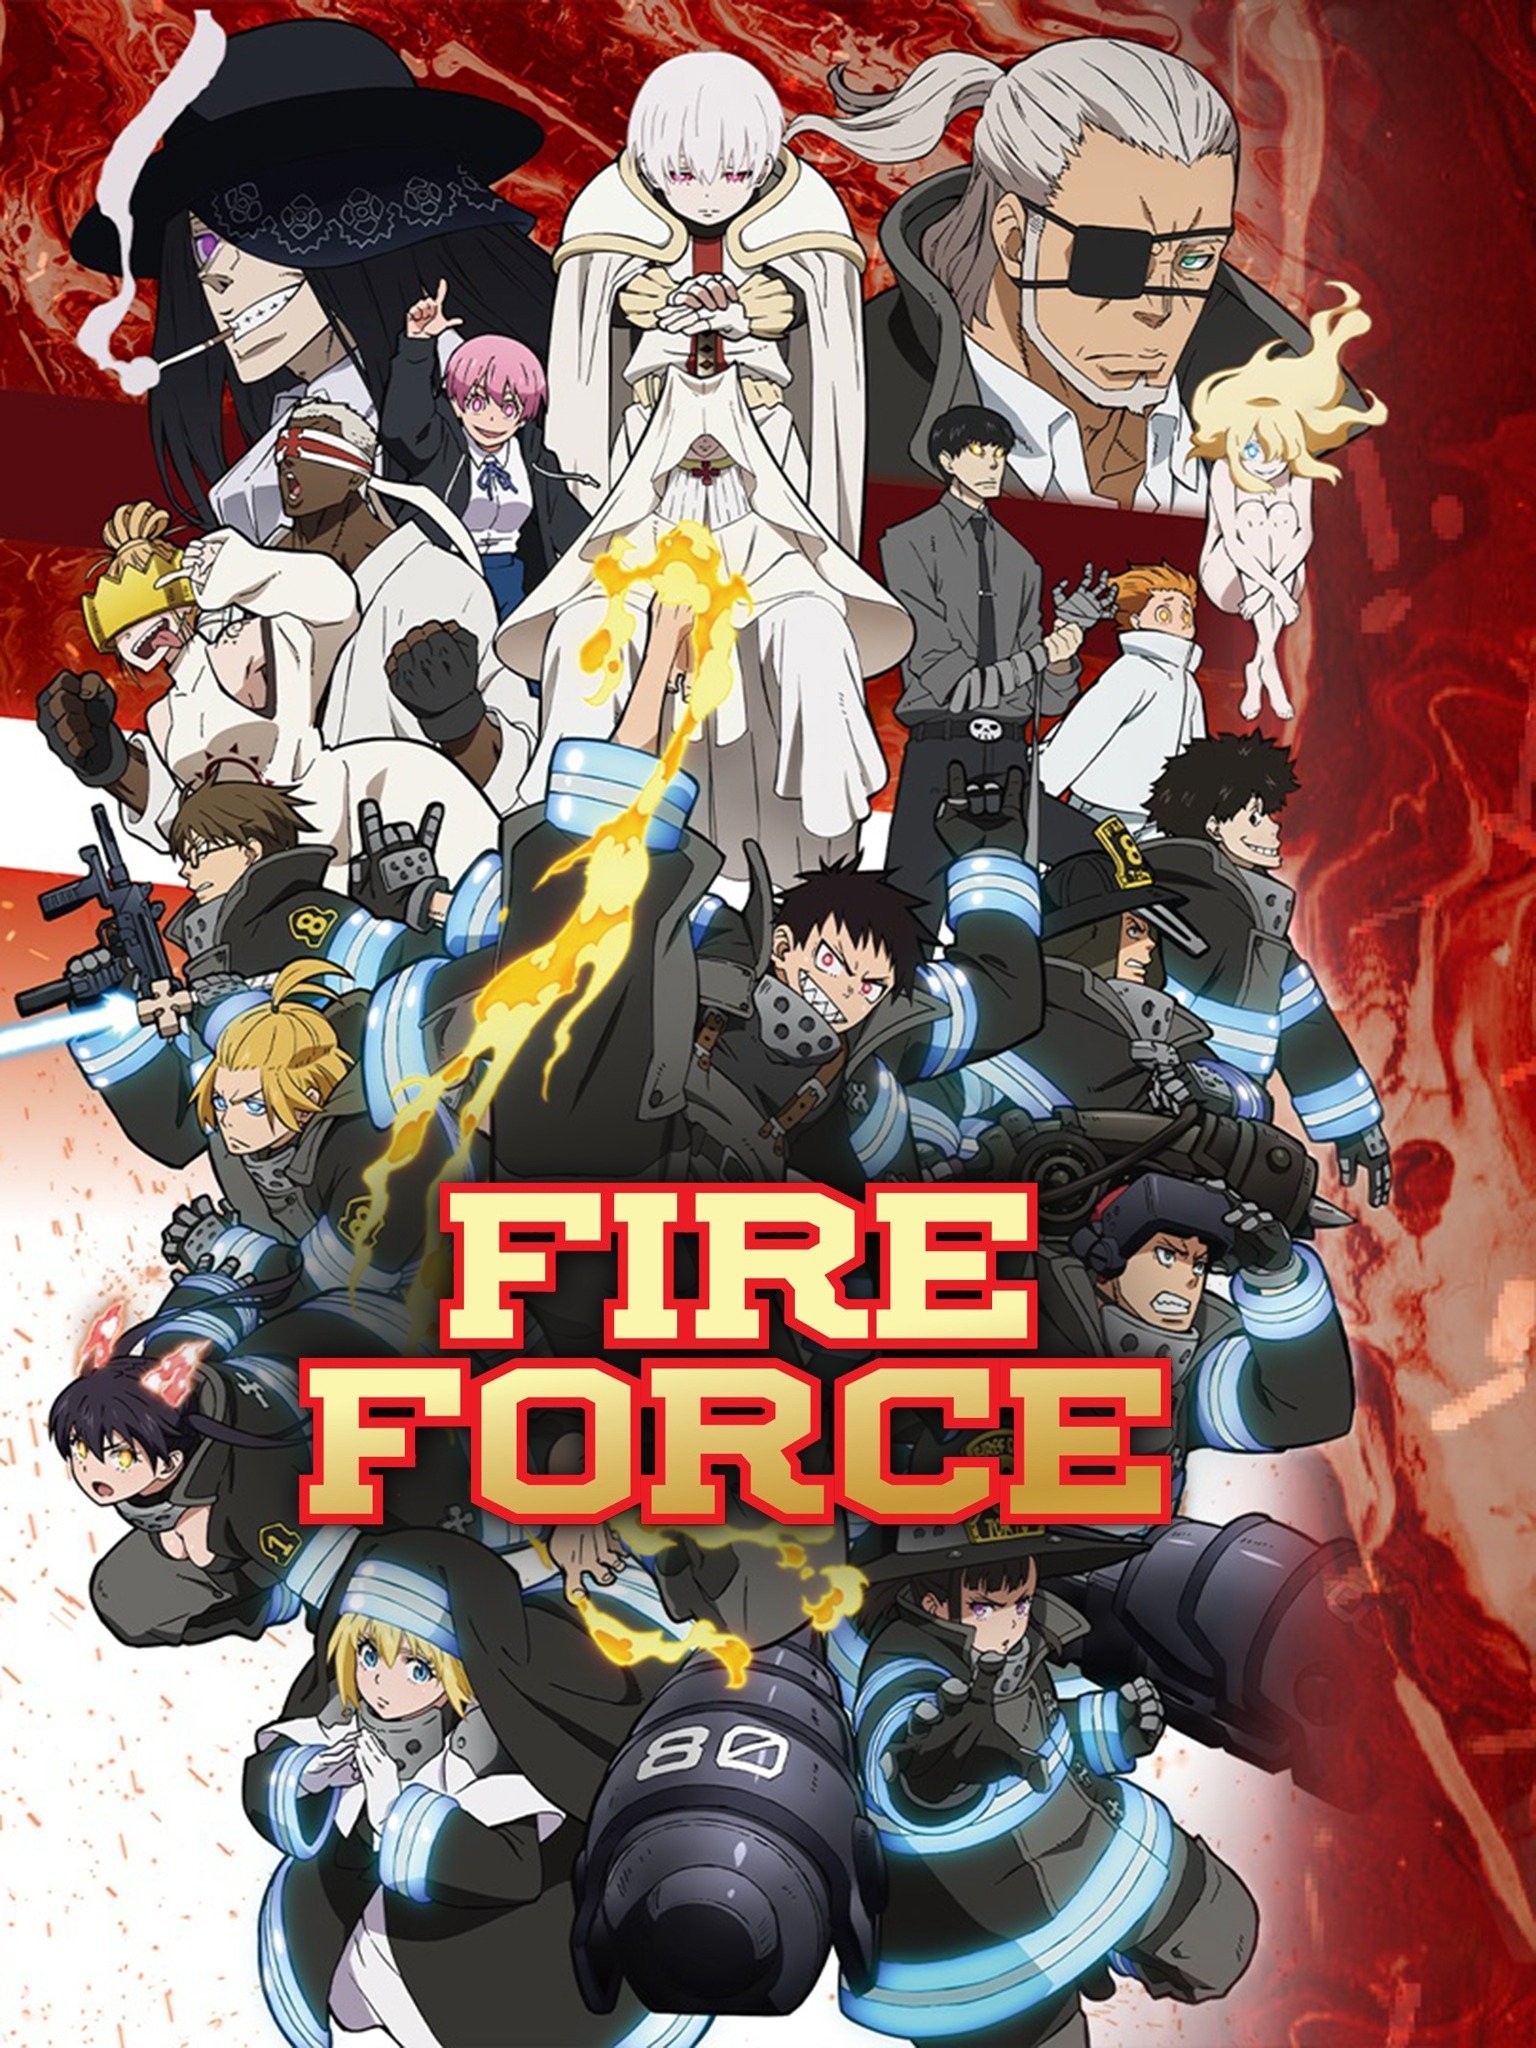 Fire Force Season 2 - Opening 2